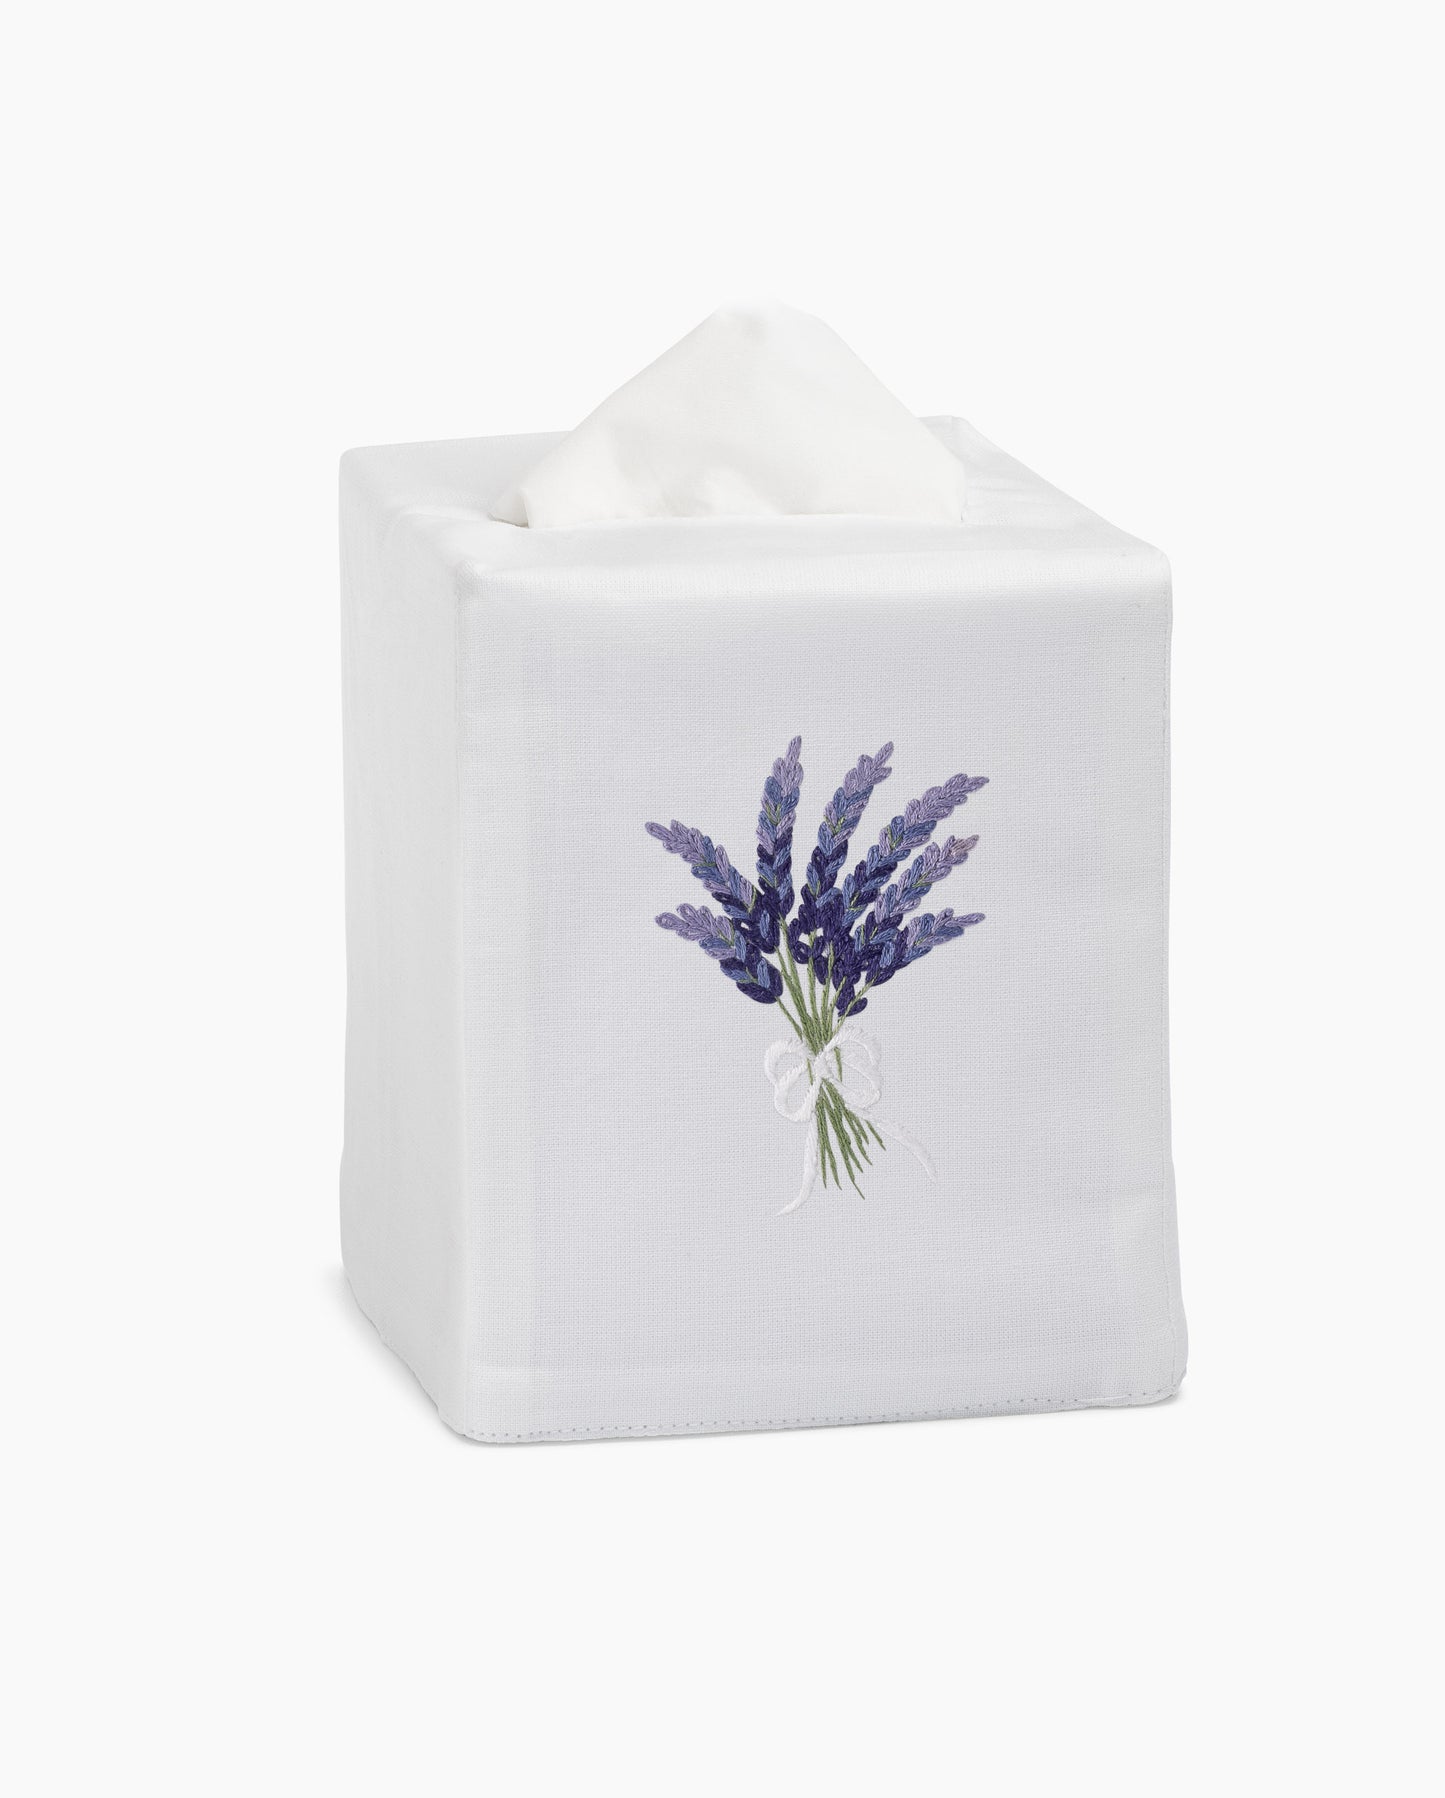 Lavender Tissue Box Cover